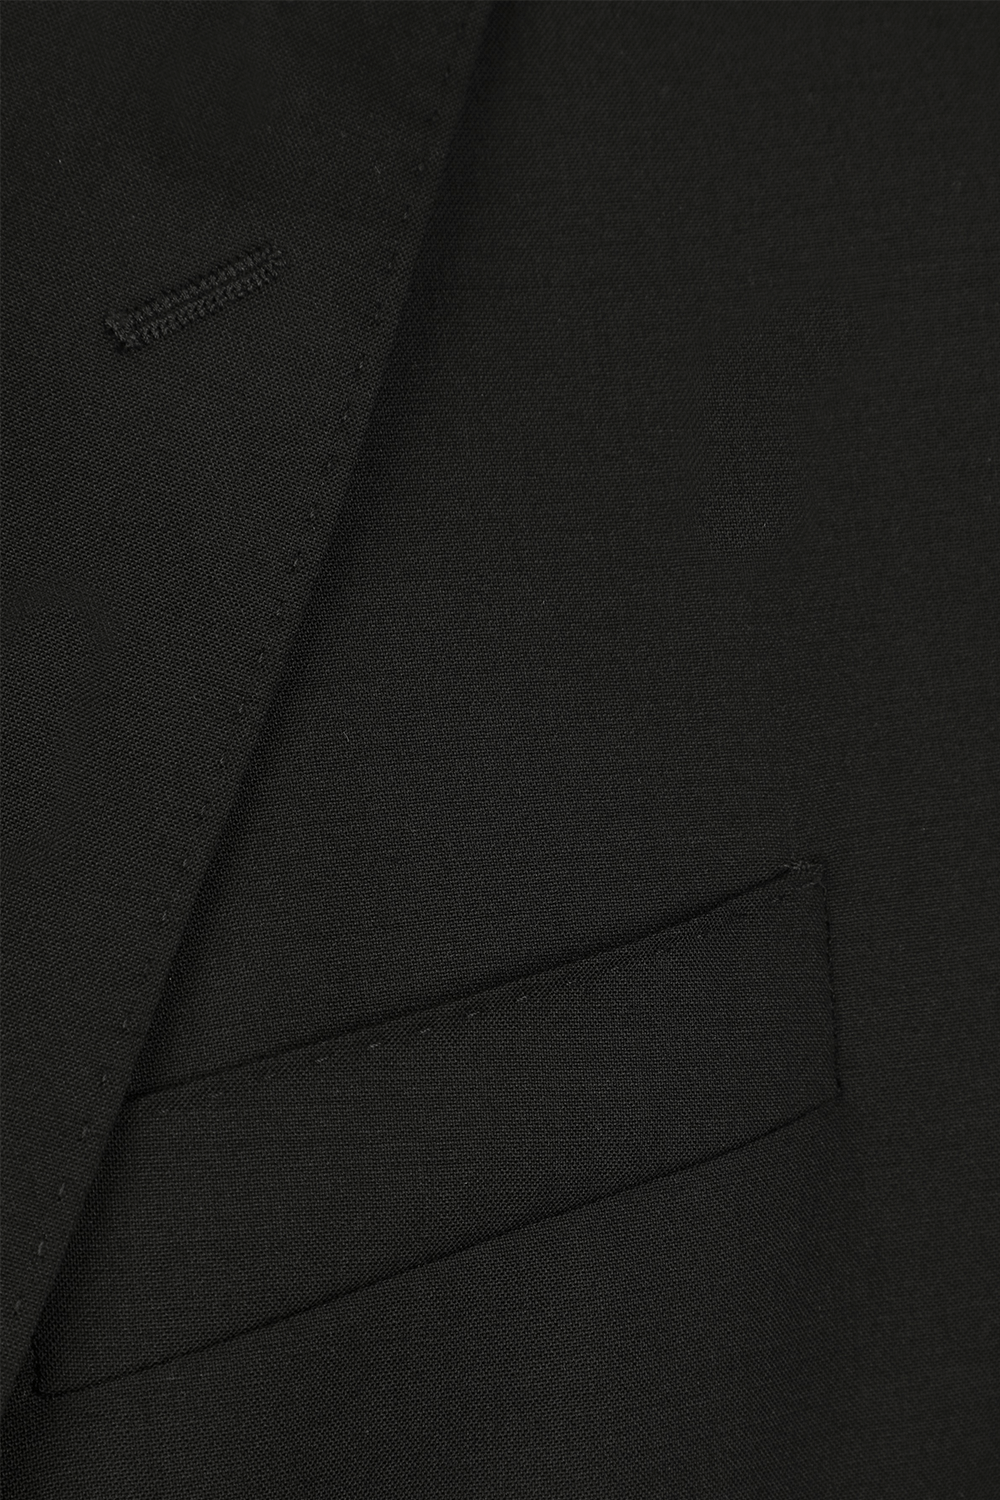 חליפה אלגנטית מצמר בלייזר ומכנסיים בגוון שחור DOLCE & GABBANA